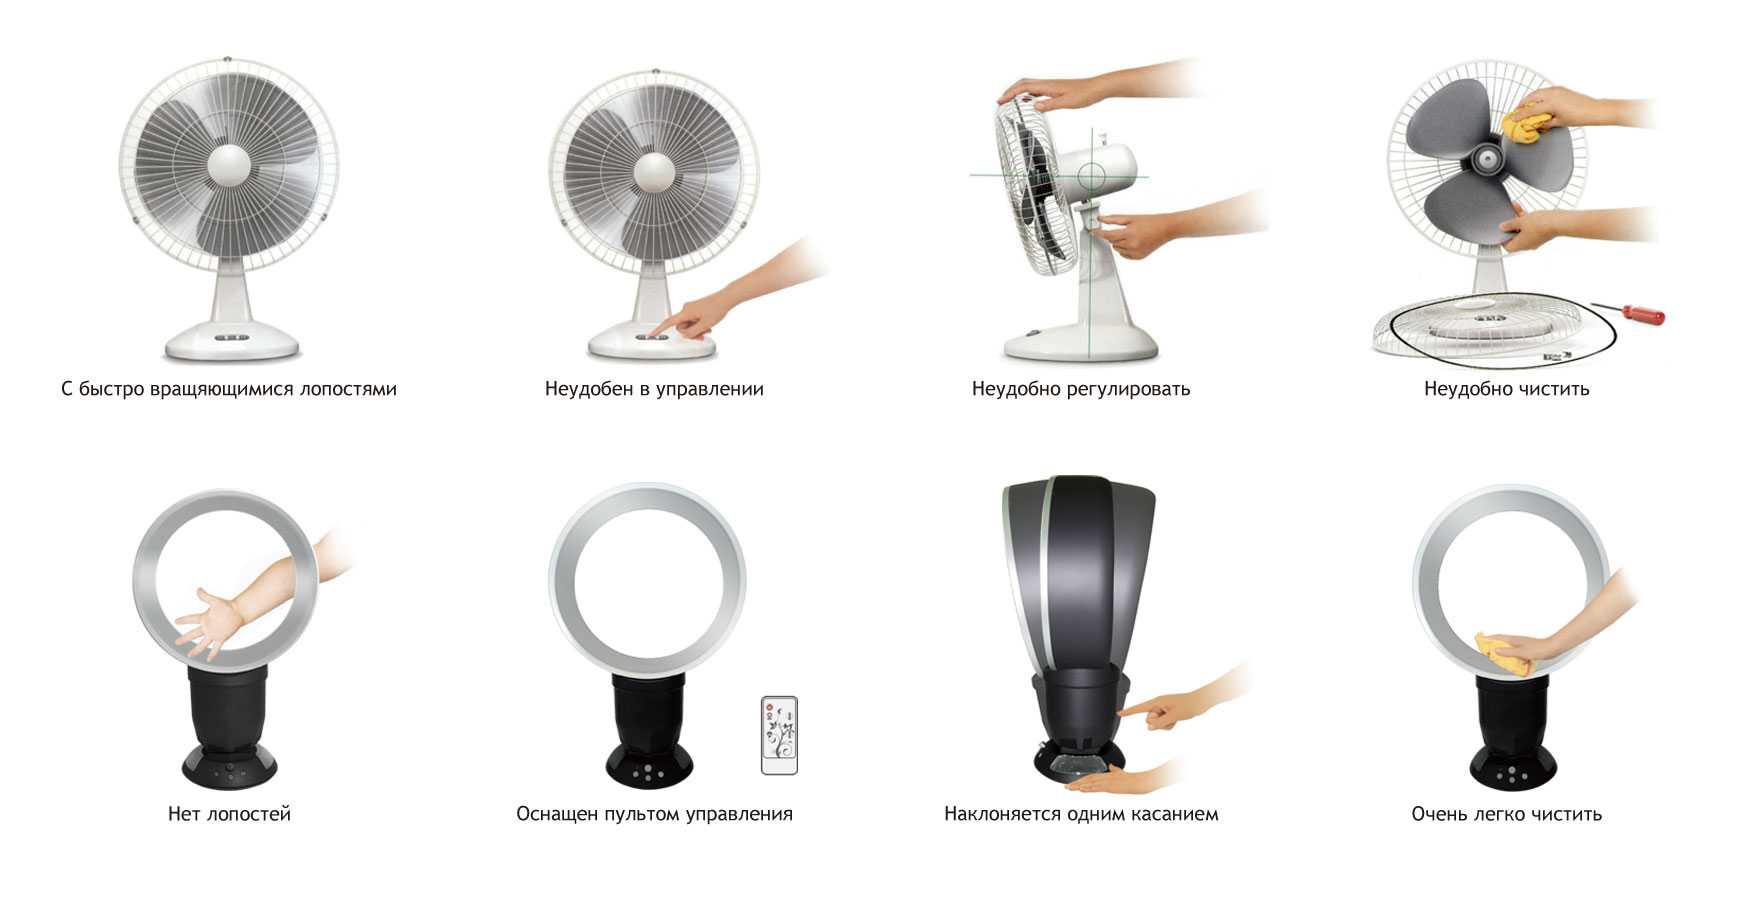 Безопасные вентиляторы: какой выбрать для квартиры?. cтатьи, тесты, обзоры